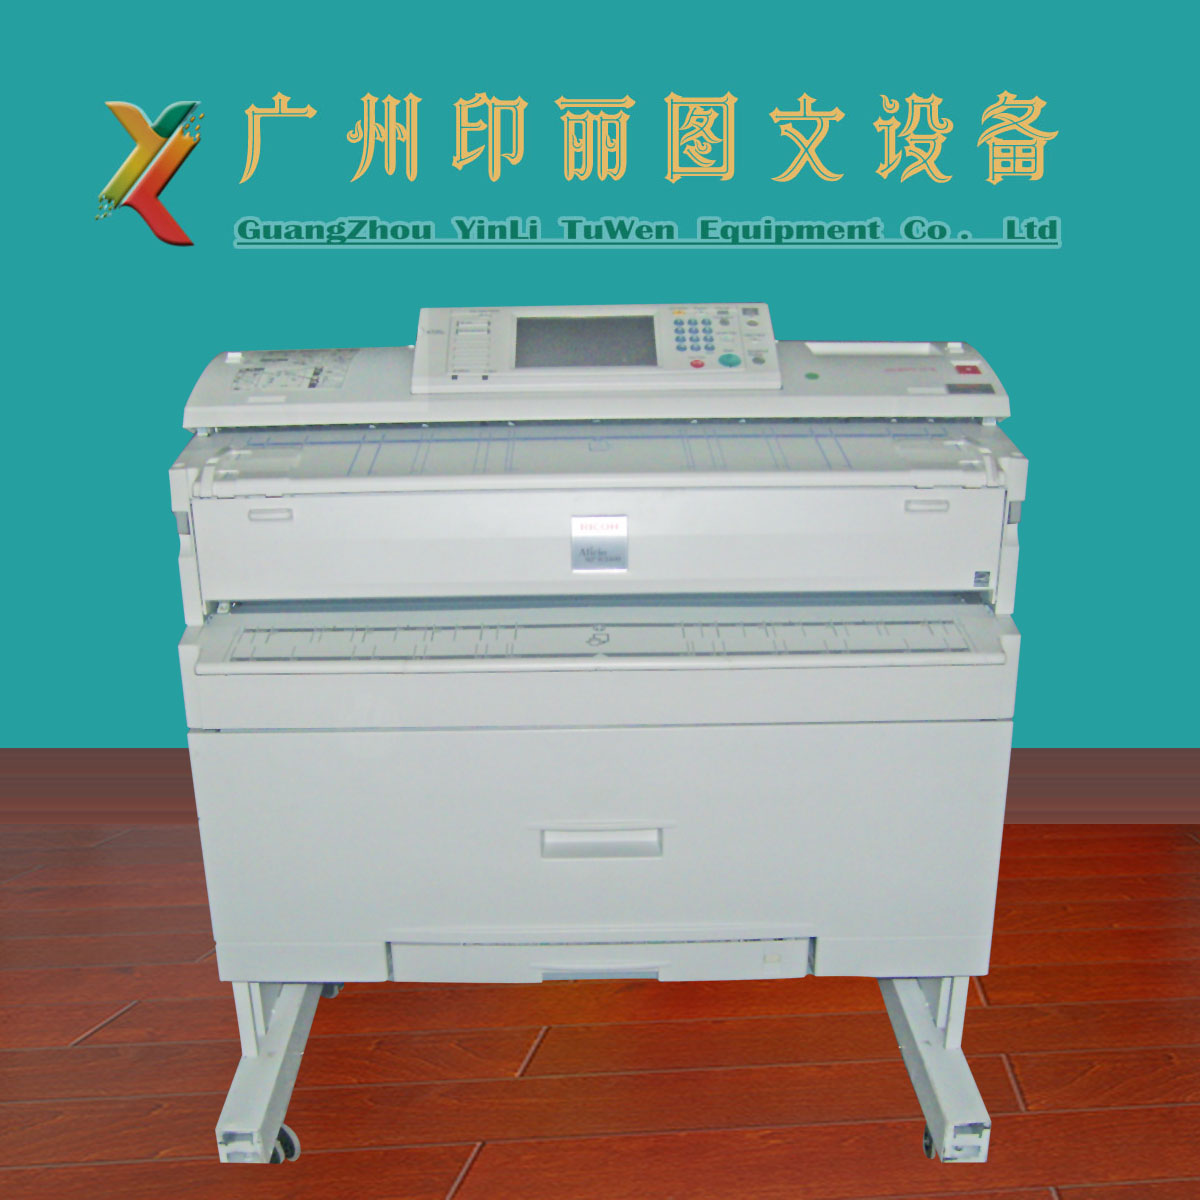 订金理光2400/3600W工程复印机A0/A1/A2大图机CAD打印 高清激光机